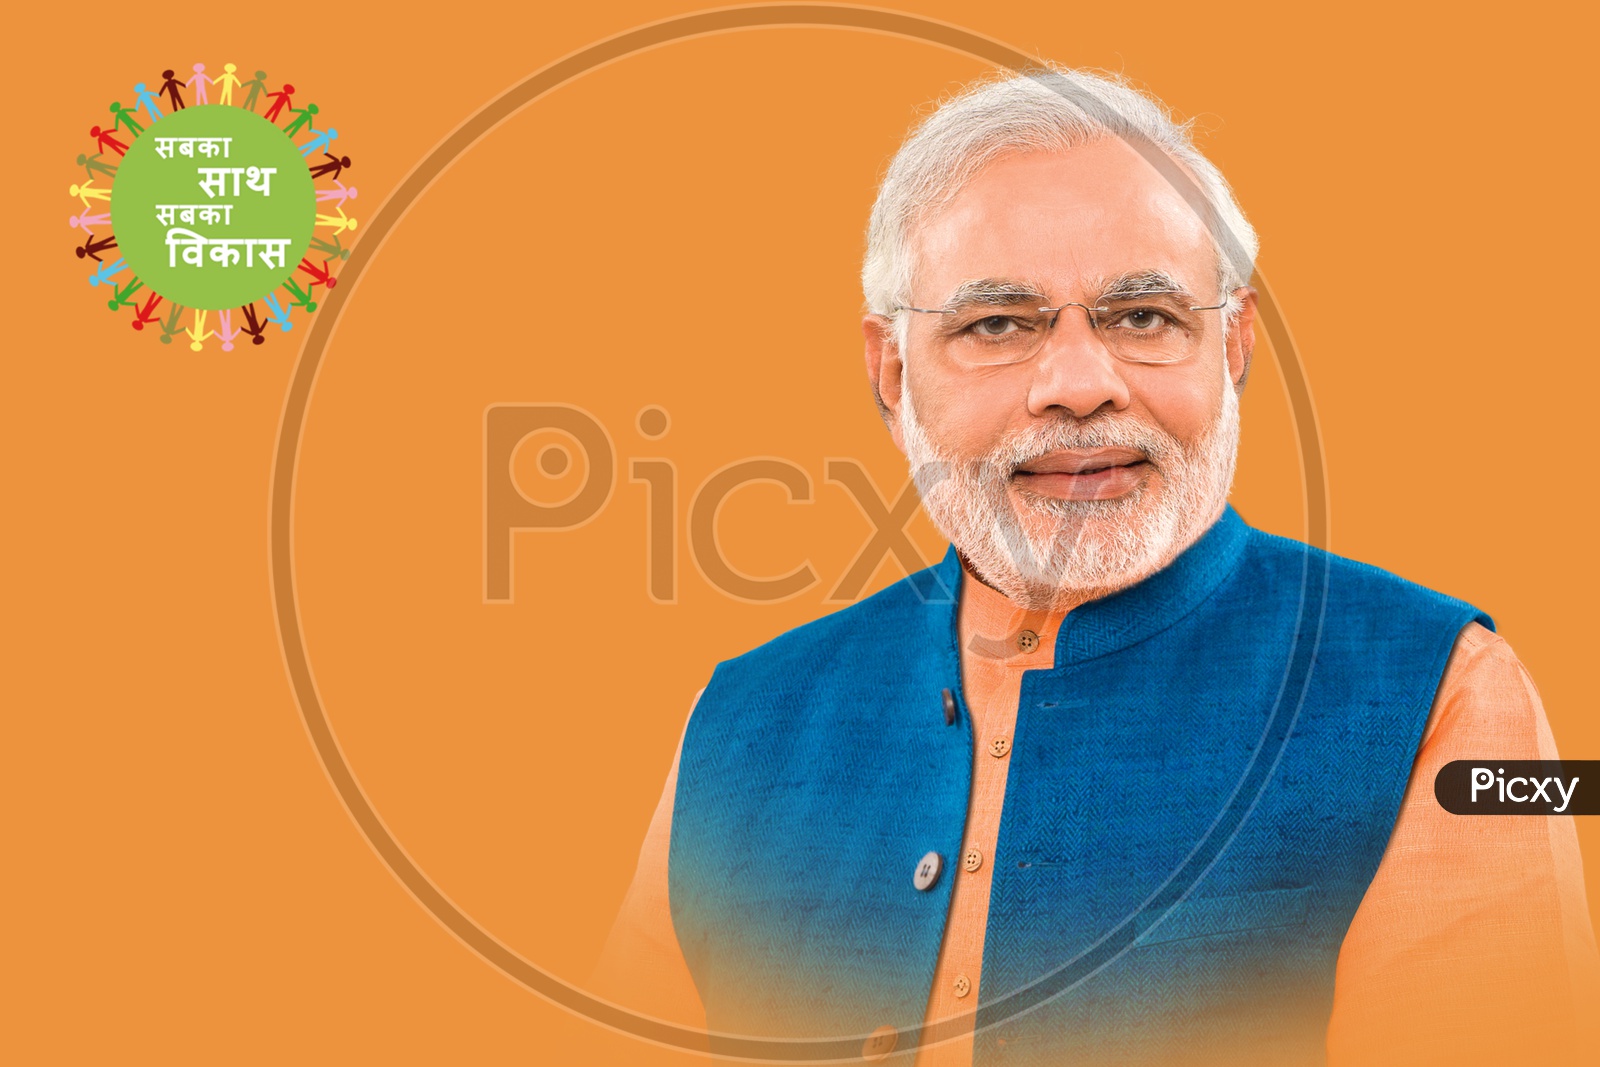 Stock Illustration shot of Prime Minister of India Narendra Modi smiling with orange background in blue suit with sabka saath sabka vikas campaign logo